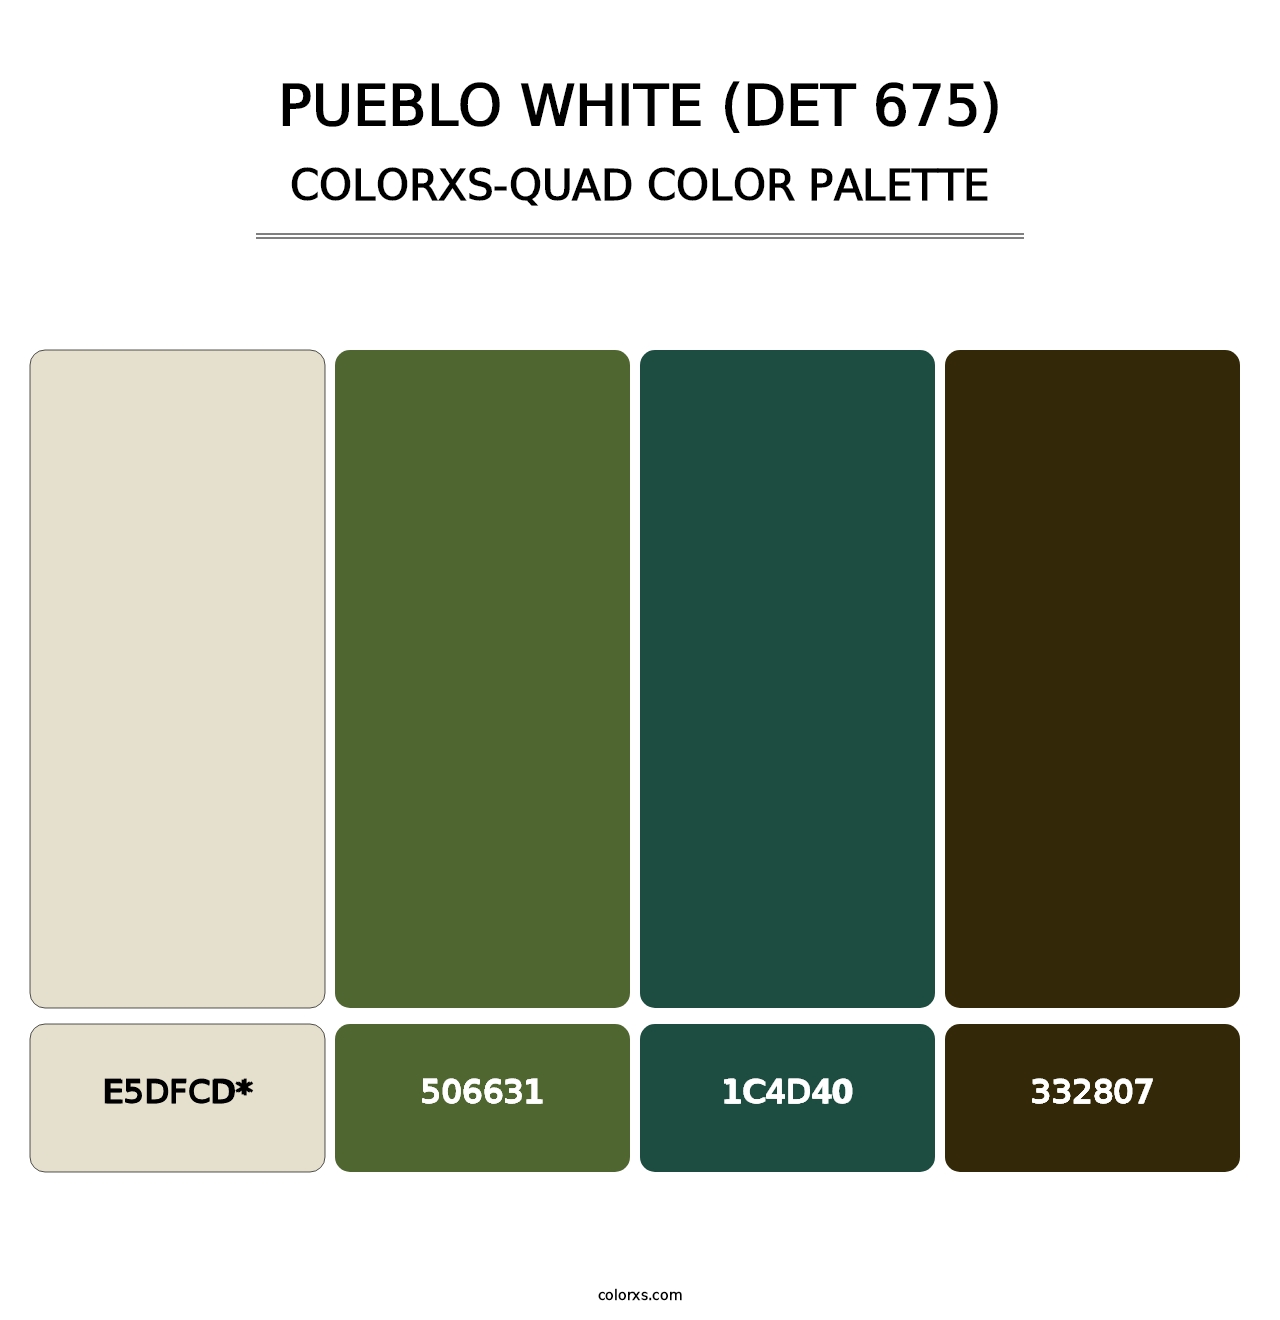 Pueblo White (DET 675) - Colorxs Quad Palette